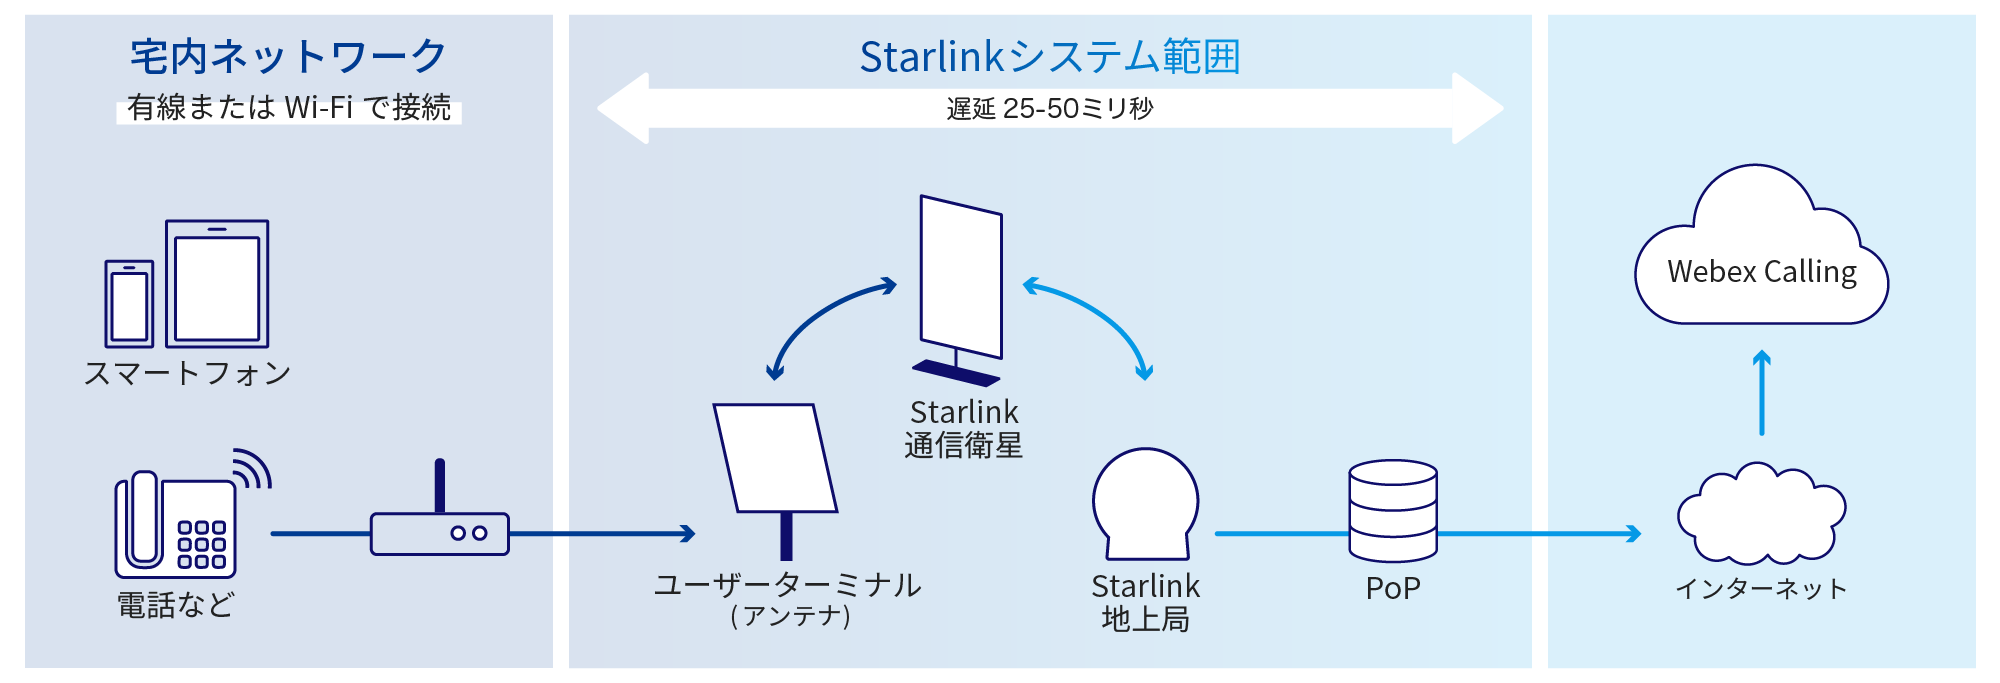 宅内ネットワーク (有線またはWi-Fiで接続) から、Starlinkシステム範囲 (遅延: 25～50ミリ秒) を通過し、インターネットから「Webex Calling」での通話を実現